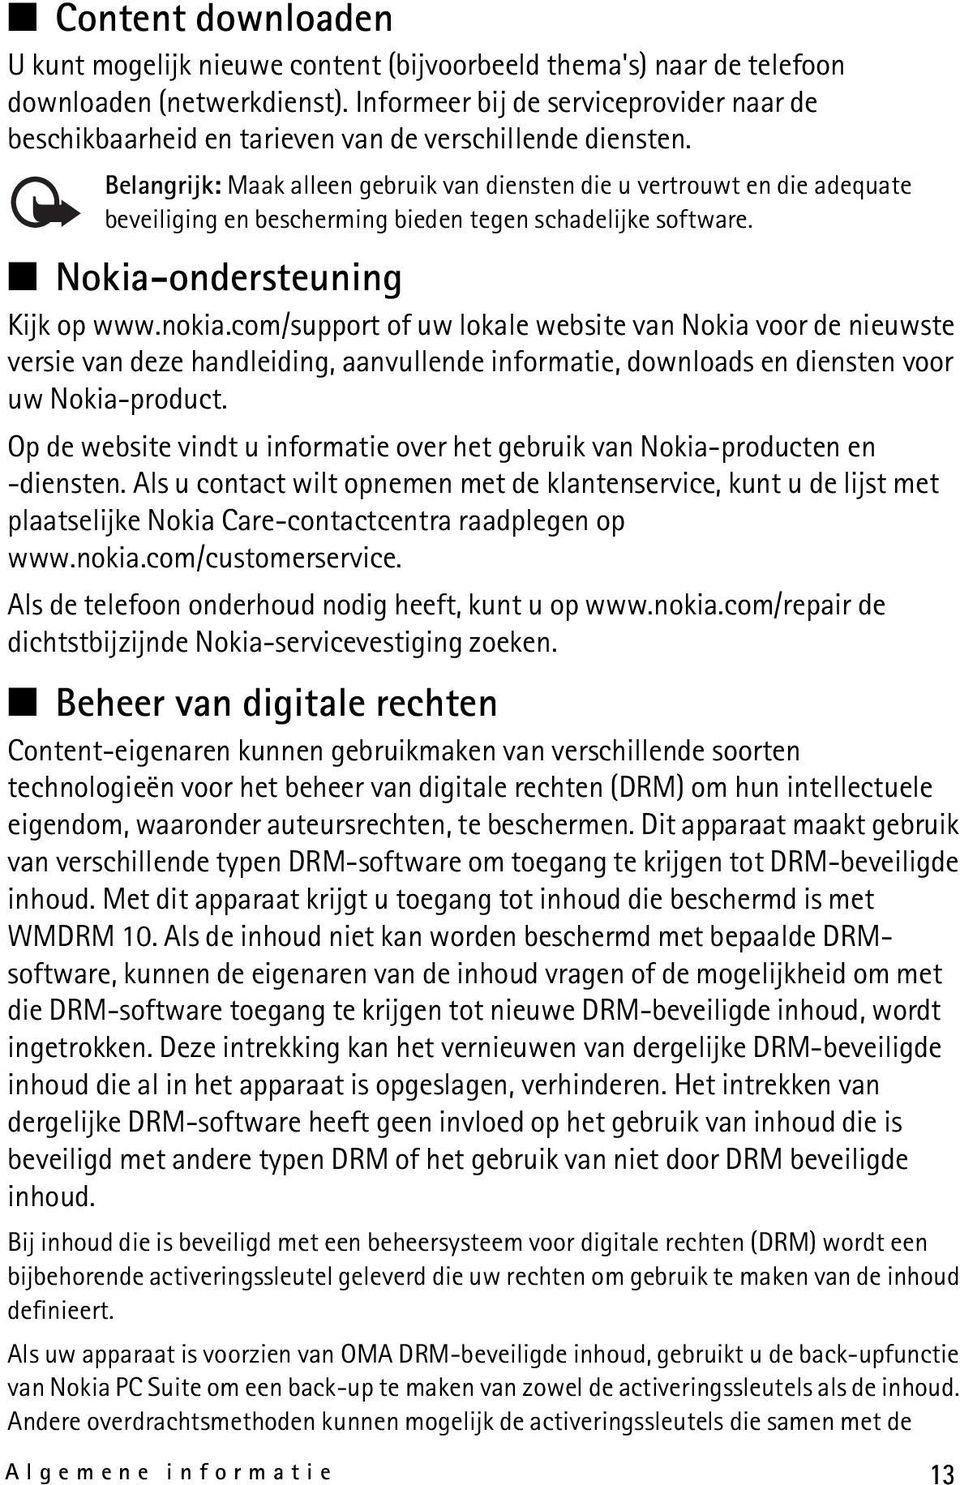 Belangrijk: Maak alleen gebruik van diensten die u vertrouwt en die adequate beveiliging en bescherming bieden tegen schadelijke software. Nokia-ondersteuning Kijk op www.nokia.